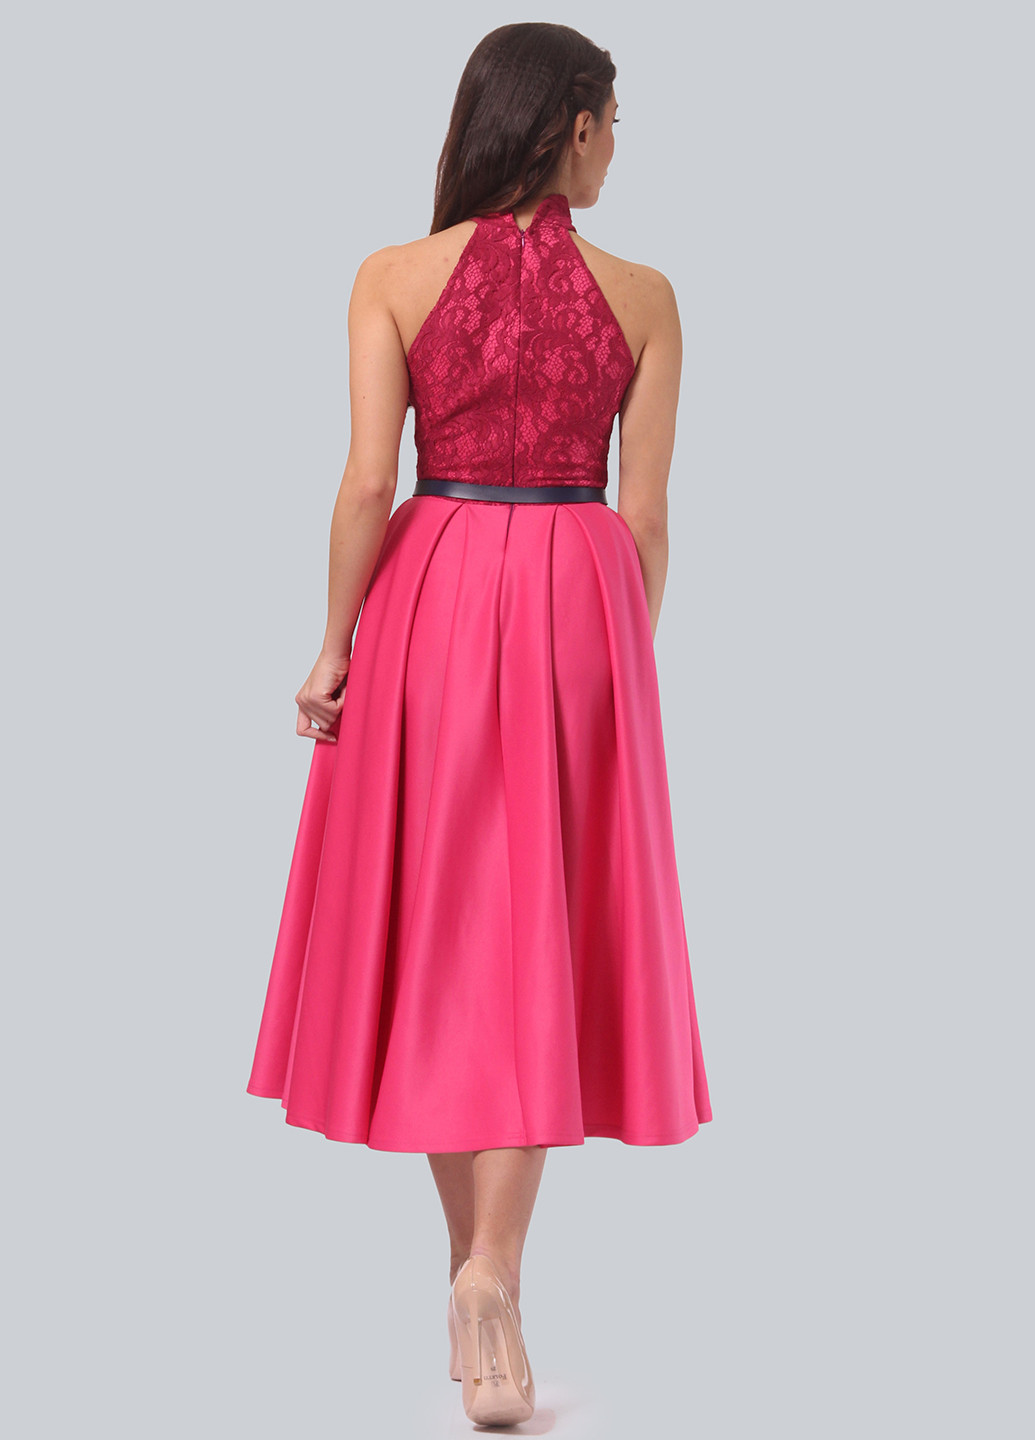 Фуксинова (кольору Фукія) коктейльна сукня, сукня дзвін Lila Kass